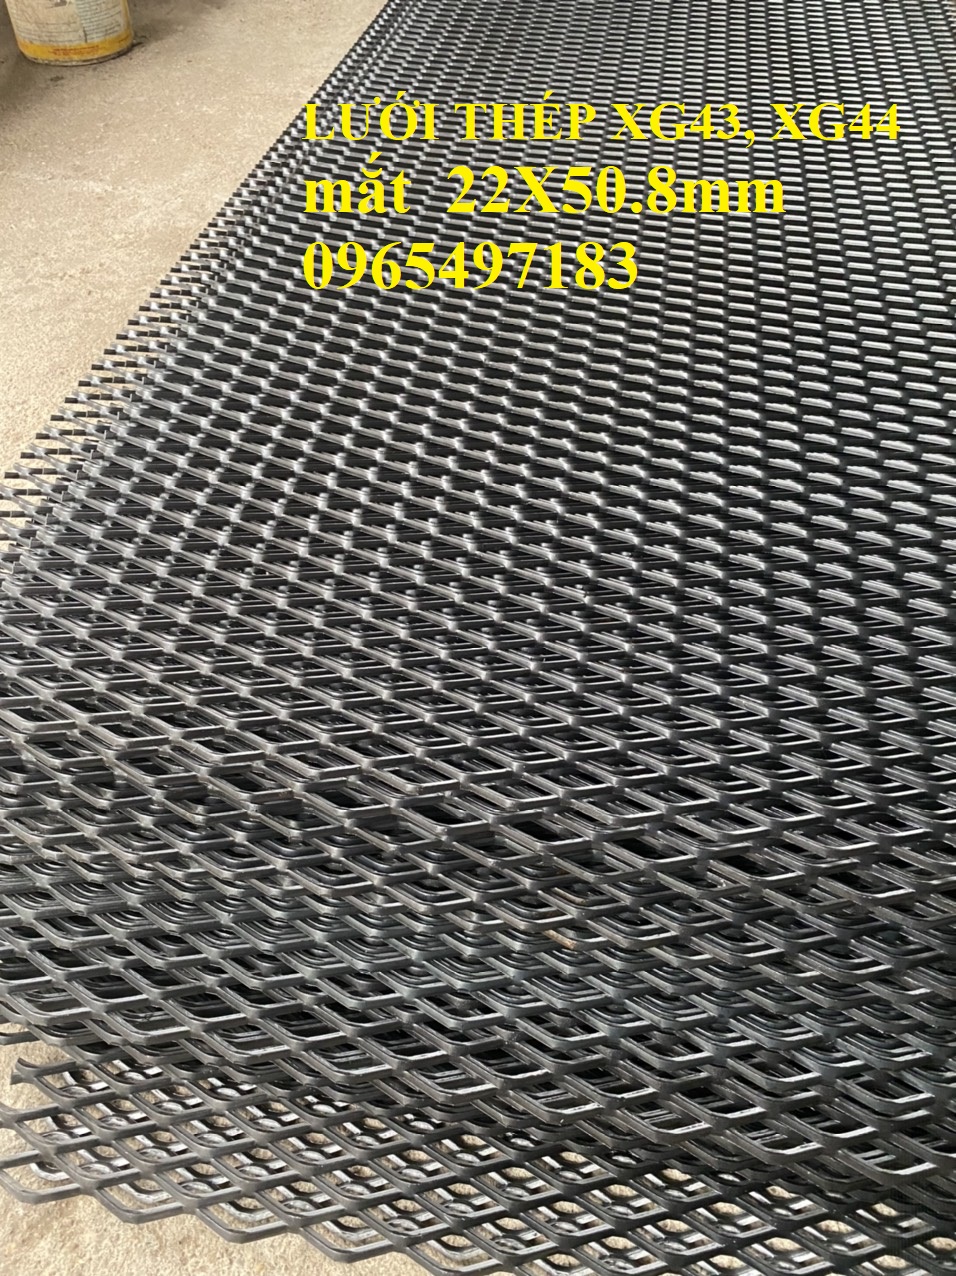 Lưới mắt cáo, lưới trám, lưới dập giãn XG43, XG44 mắt lưới 22x50.8mm dày 3mm, 4mm. Nhận sản xuất theo kích thước yêu cầu 